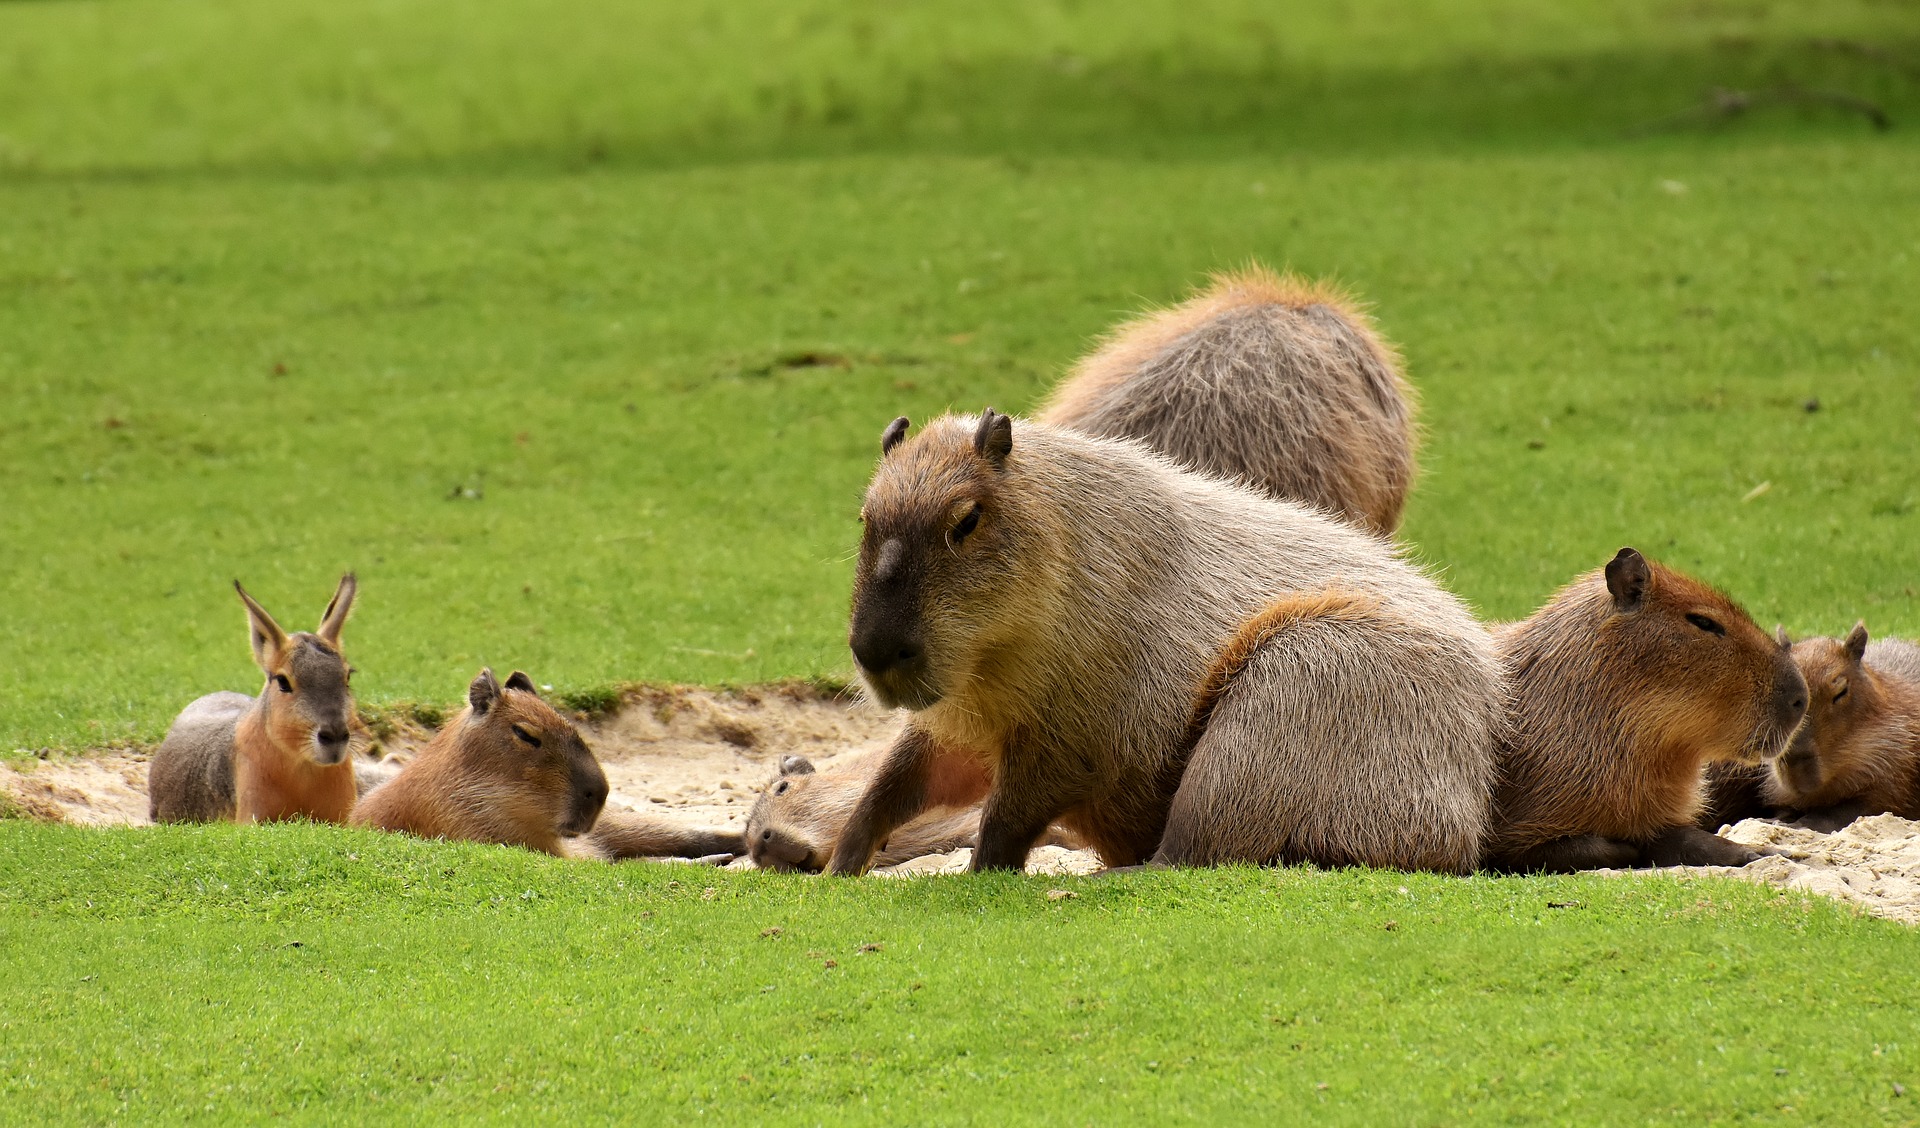 Le capybara est intelligent et peut être apprivoisé.